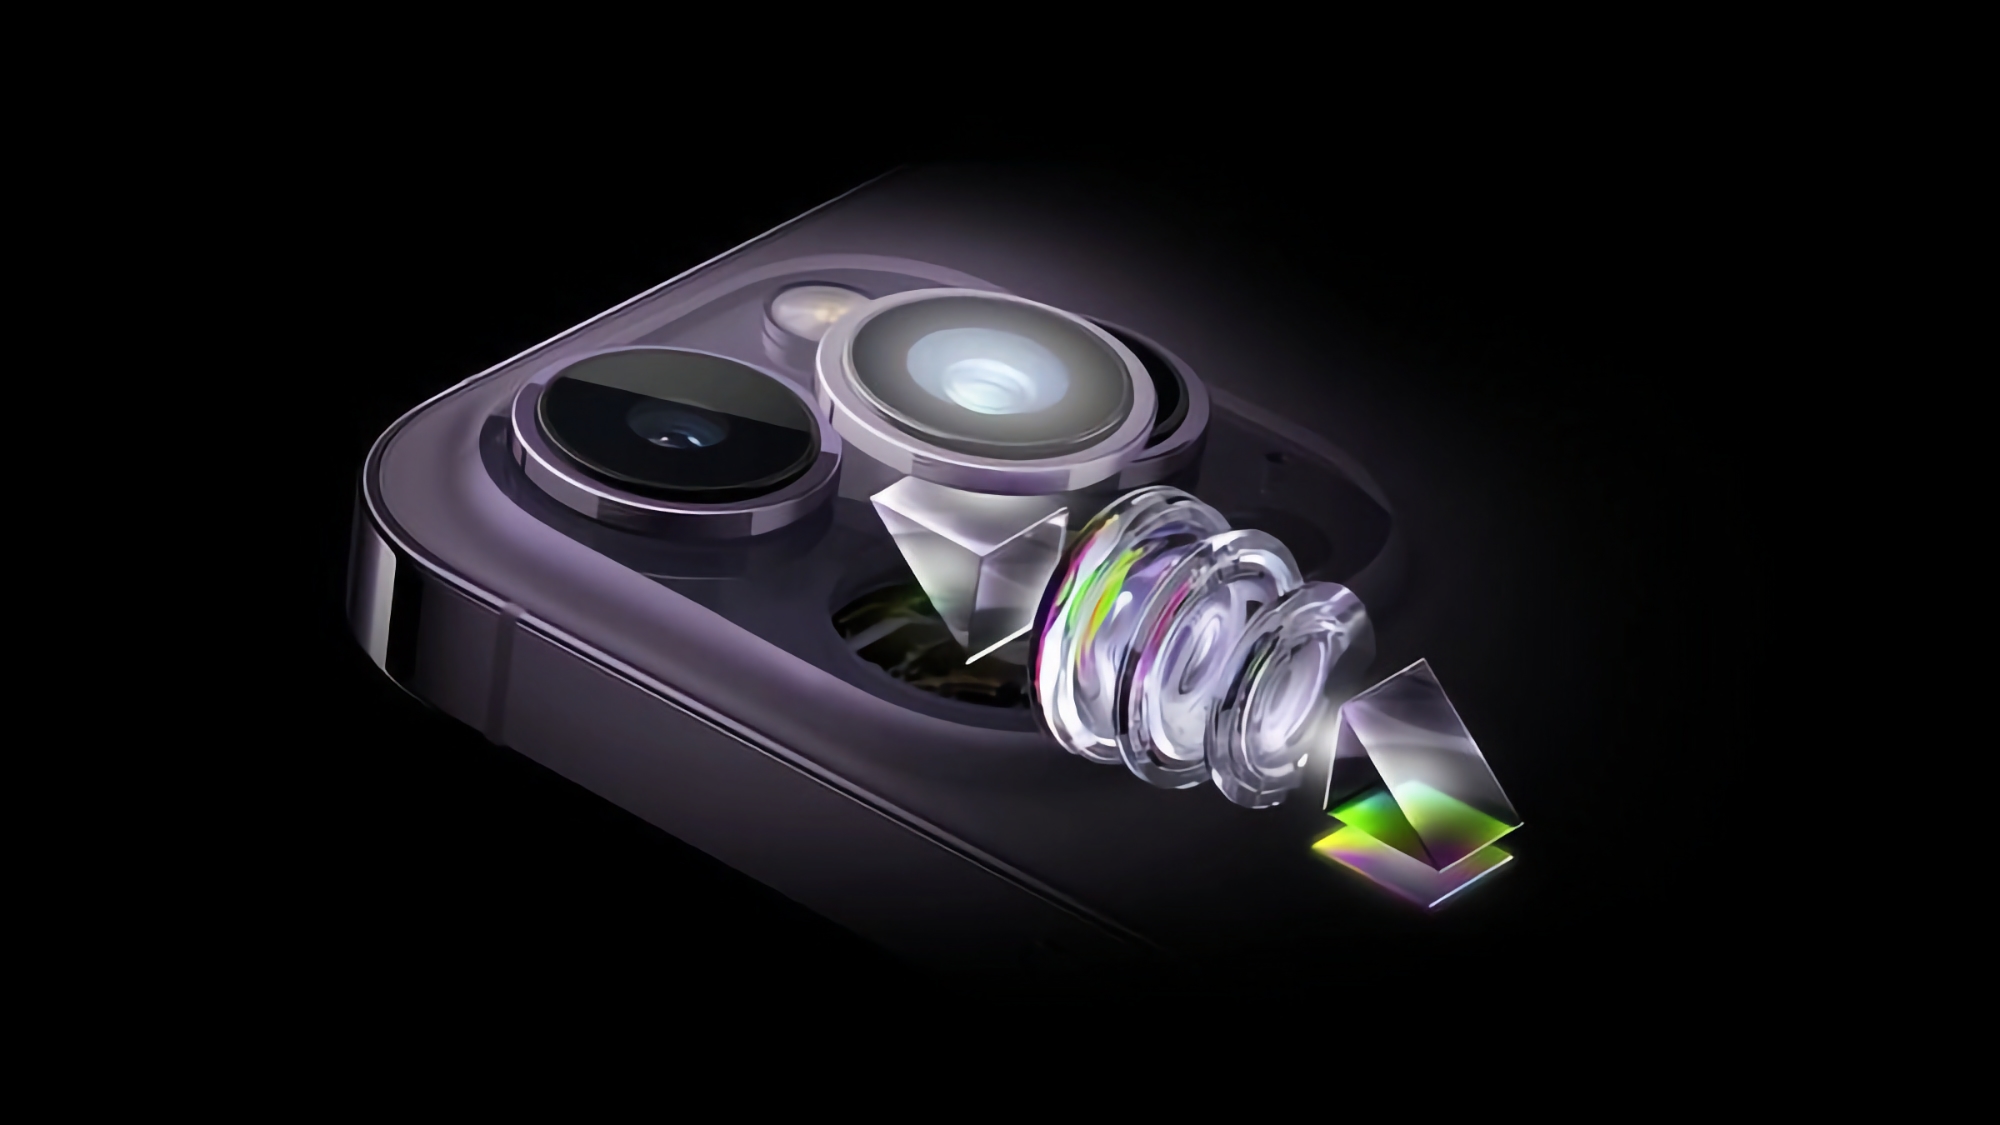 Si vocifera che l'iPhone 15 Pro Max avrà una fotocamera con zoom ottico 5-6x